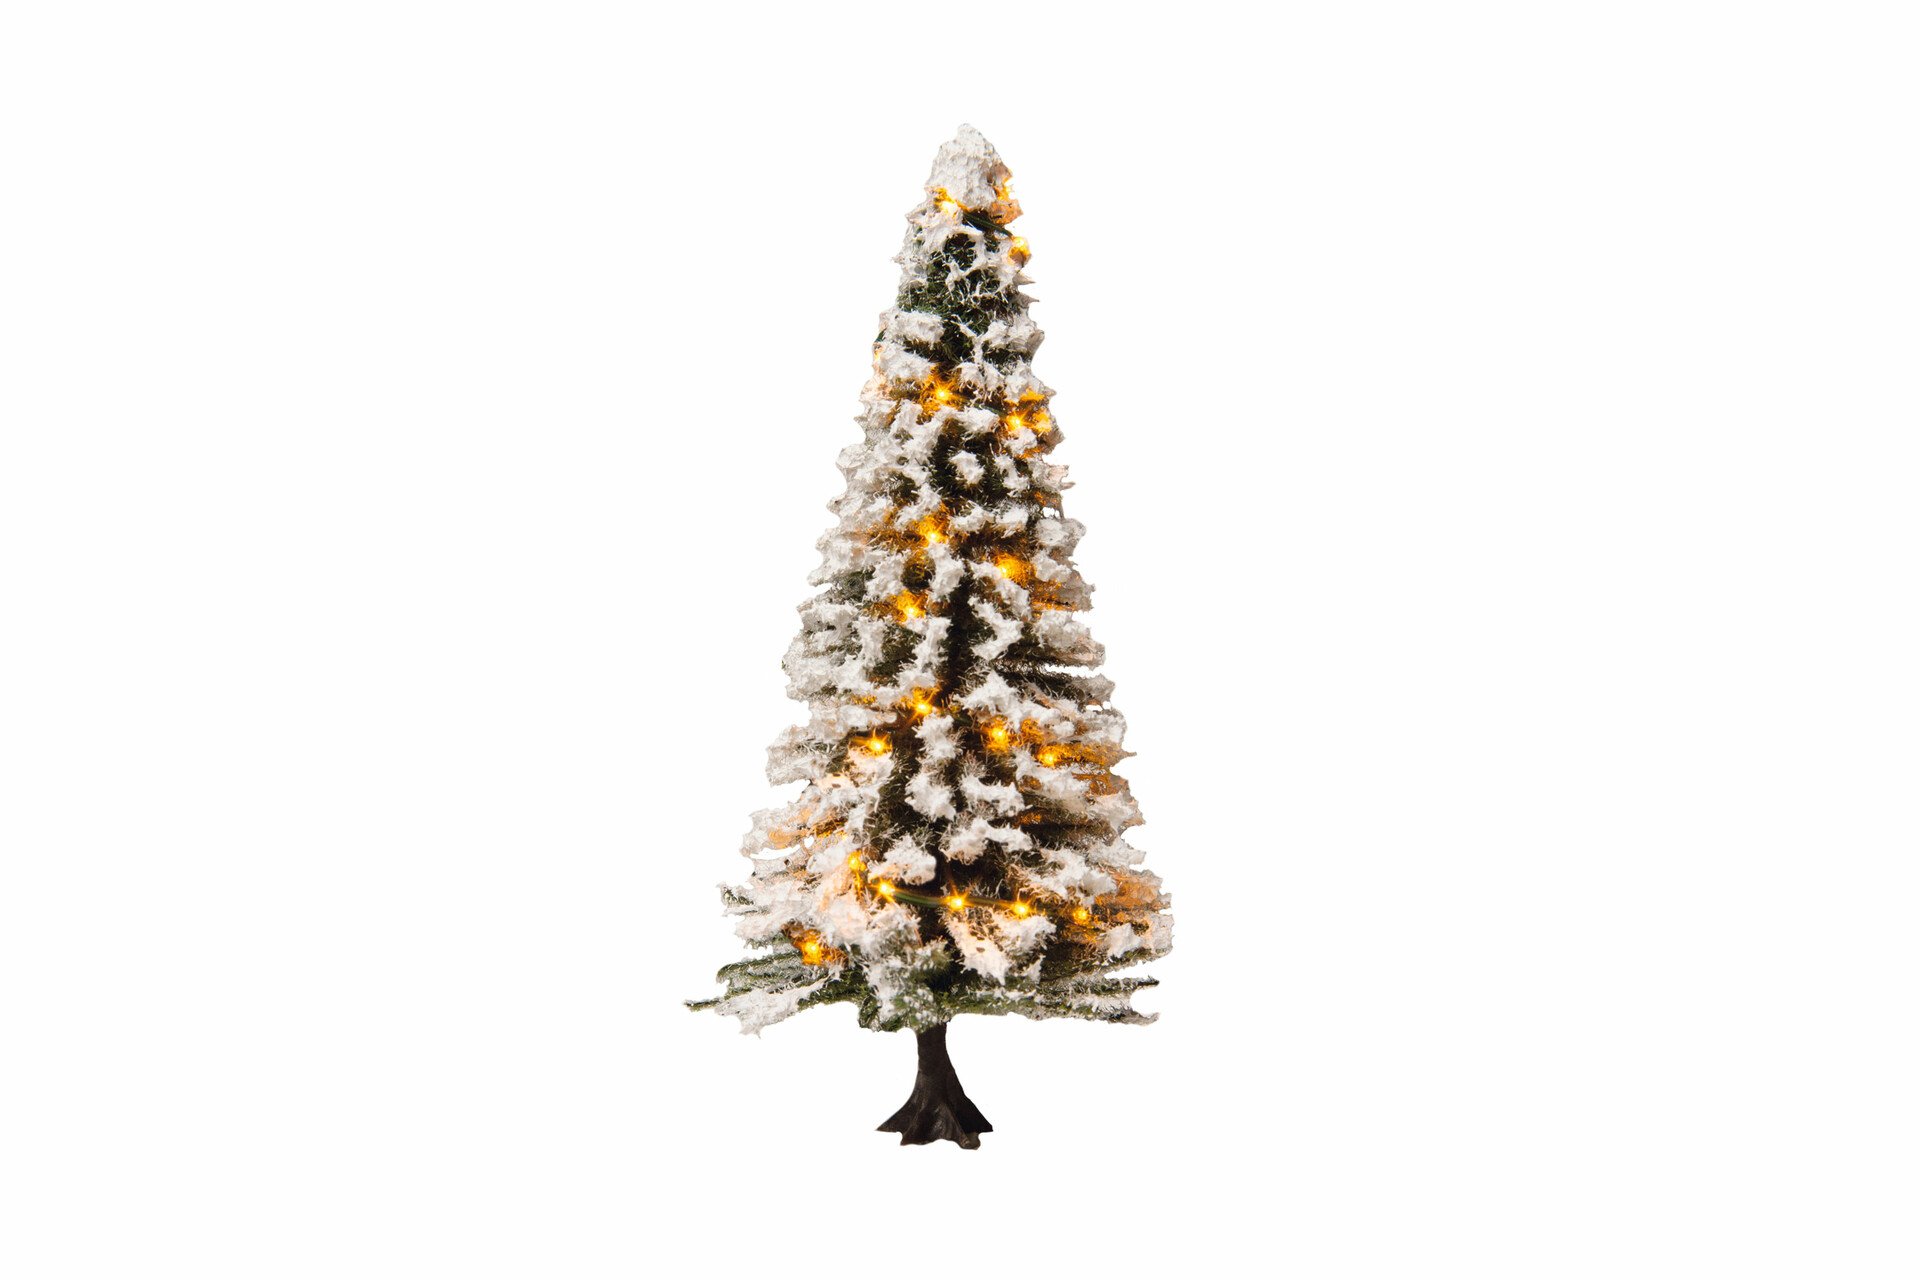 Beleuchteter Weihnachtsbaum mit 30 LEDs, verschneit, 12 cm hoch